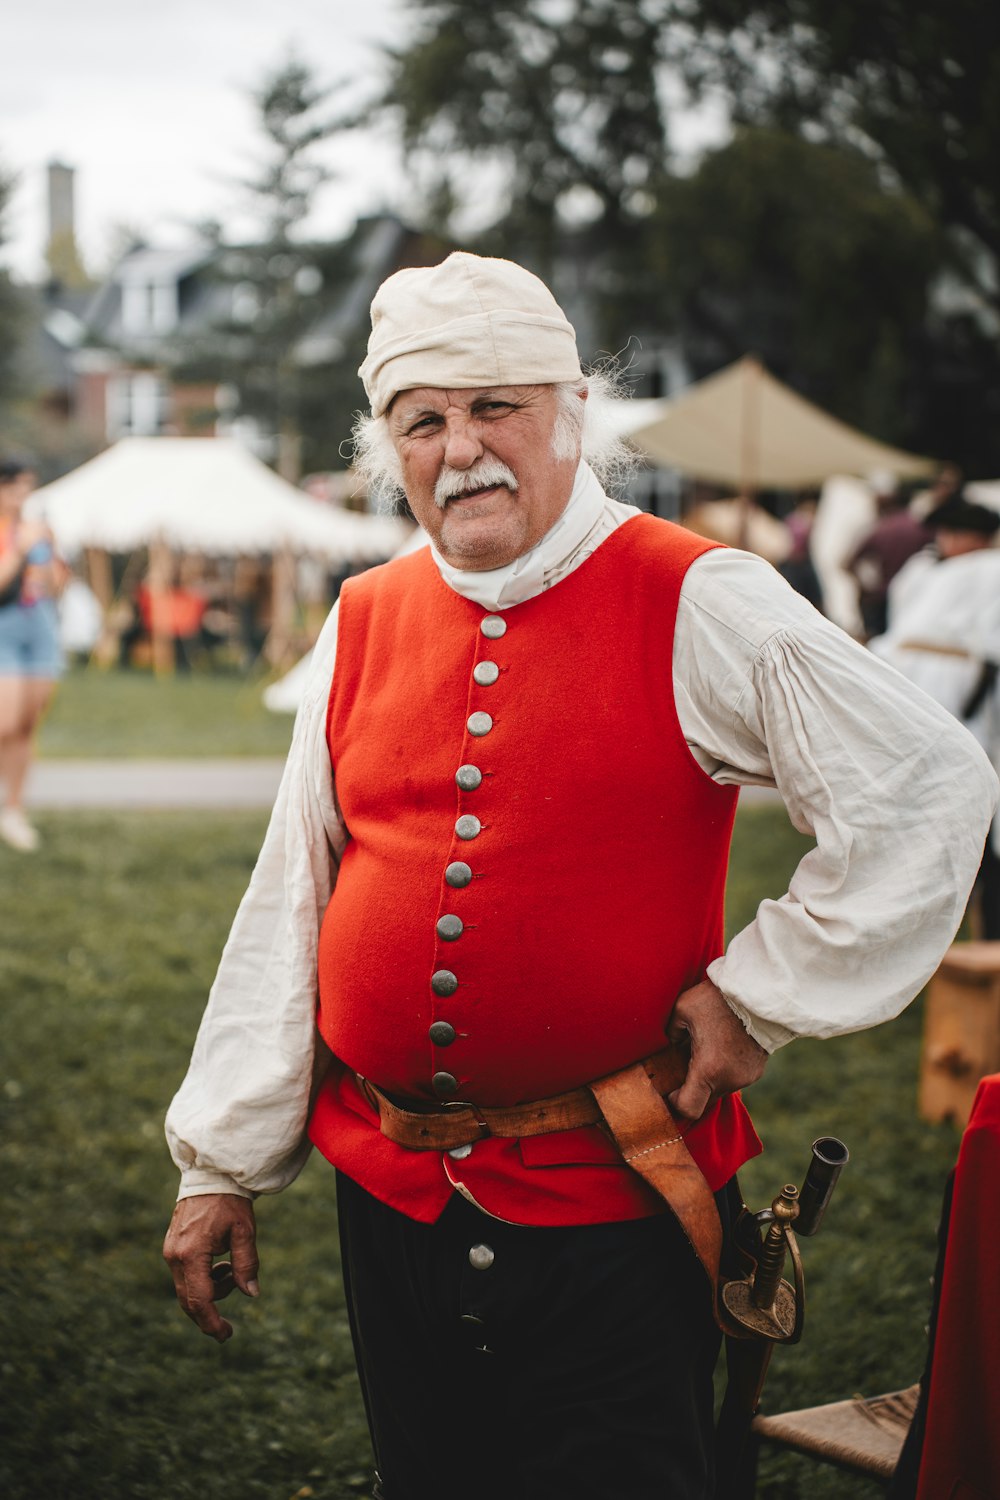 Ein alter Mann in roter Weste und weißem Turban